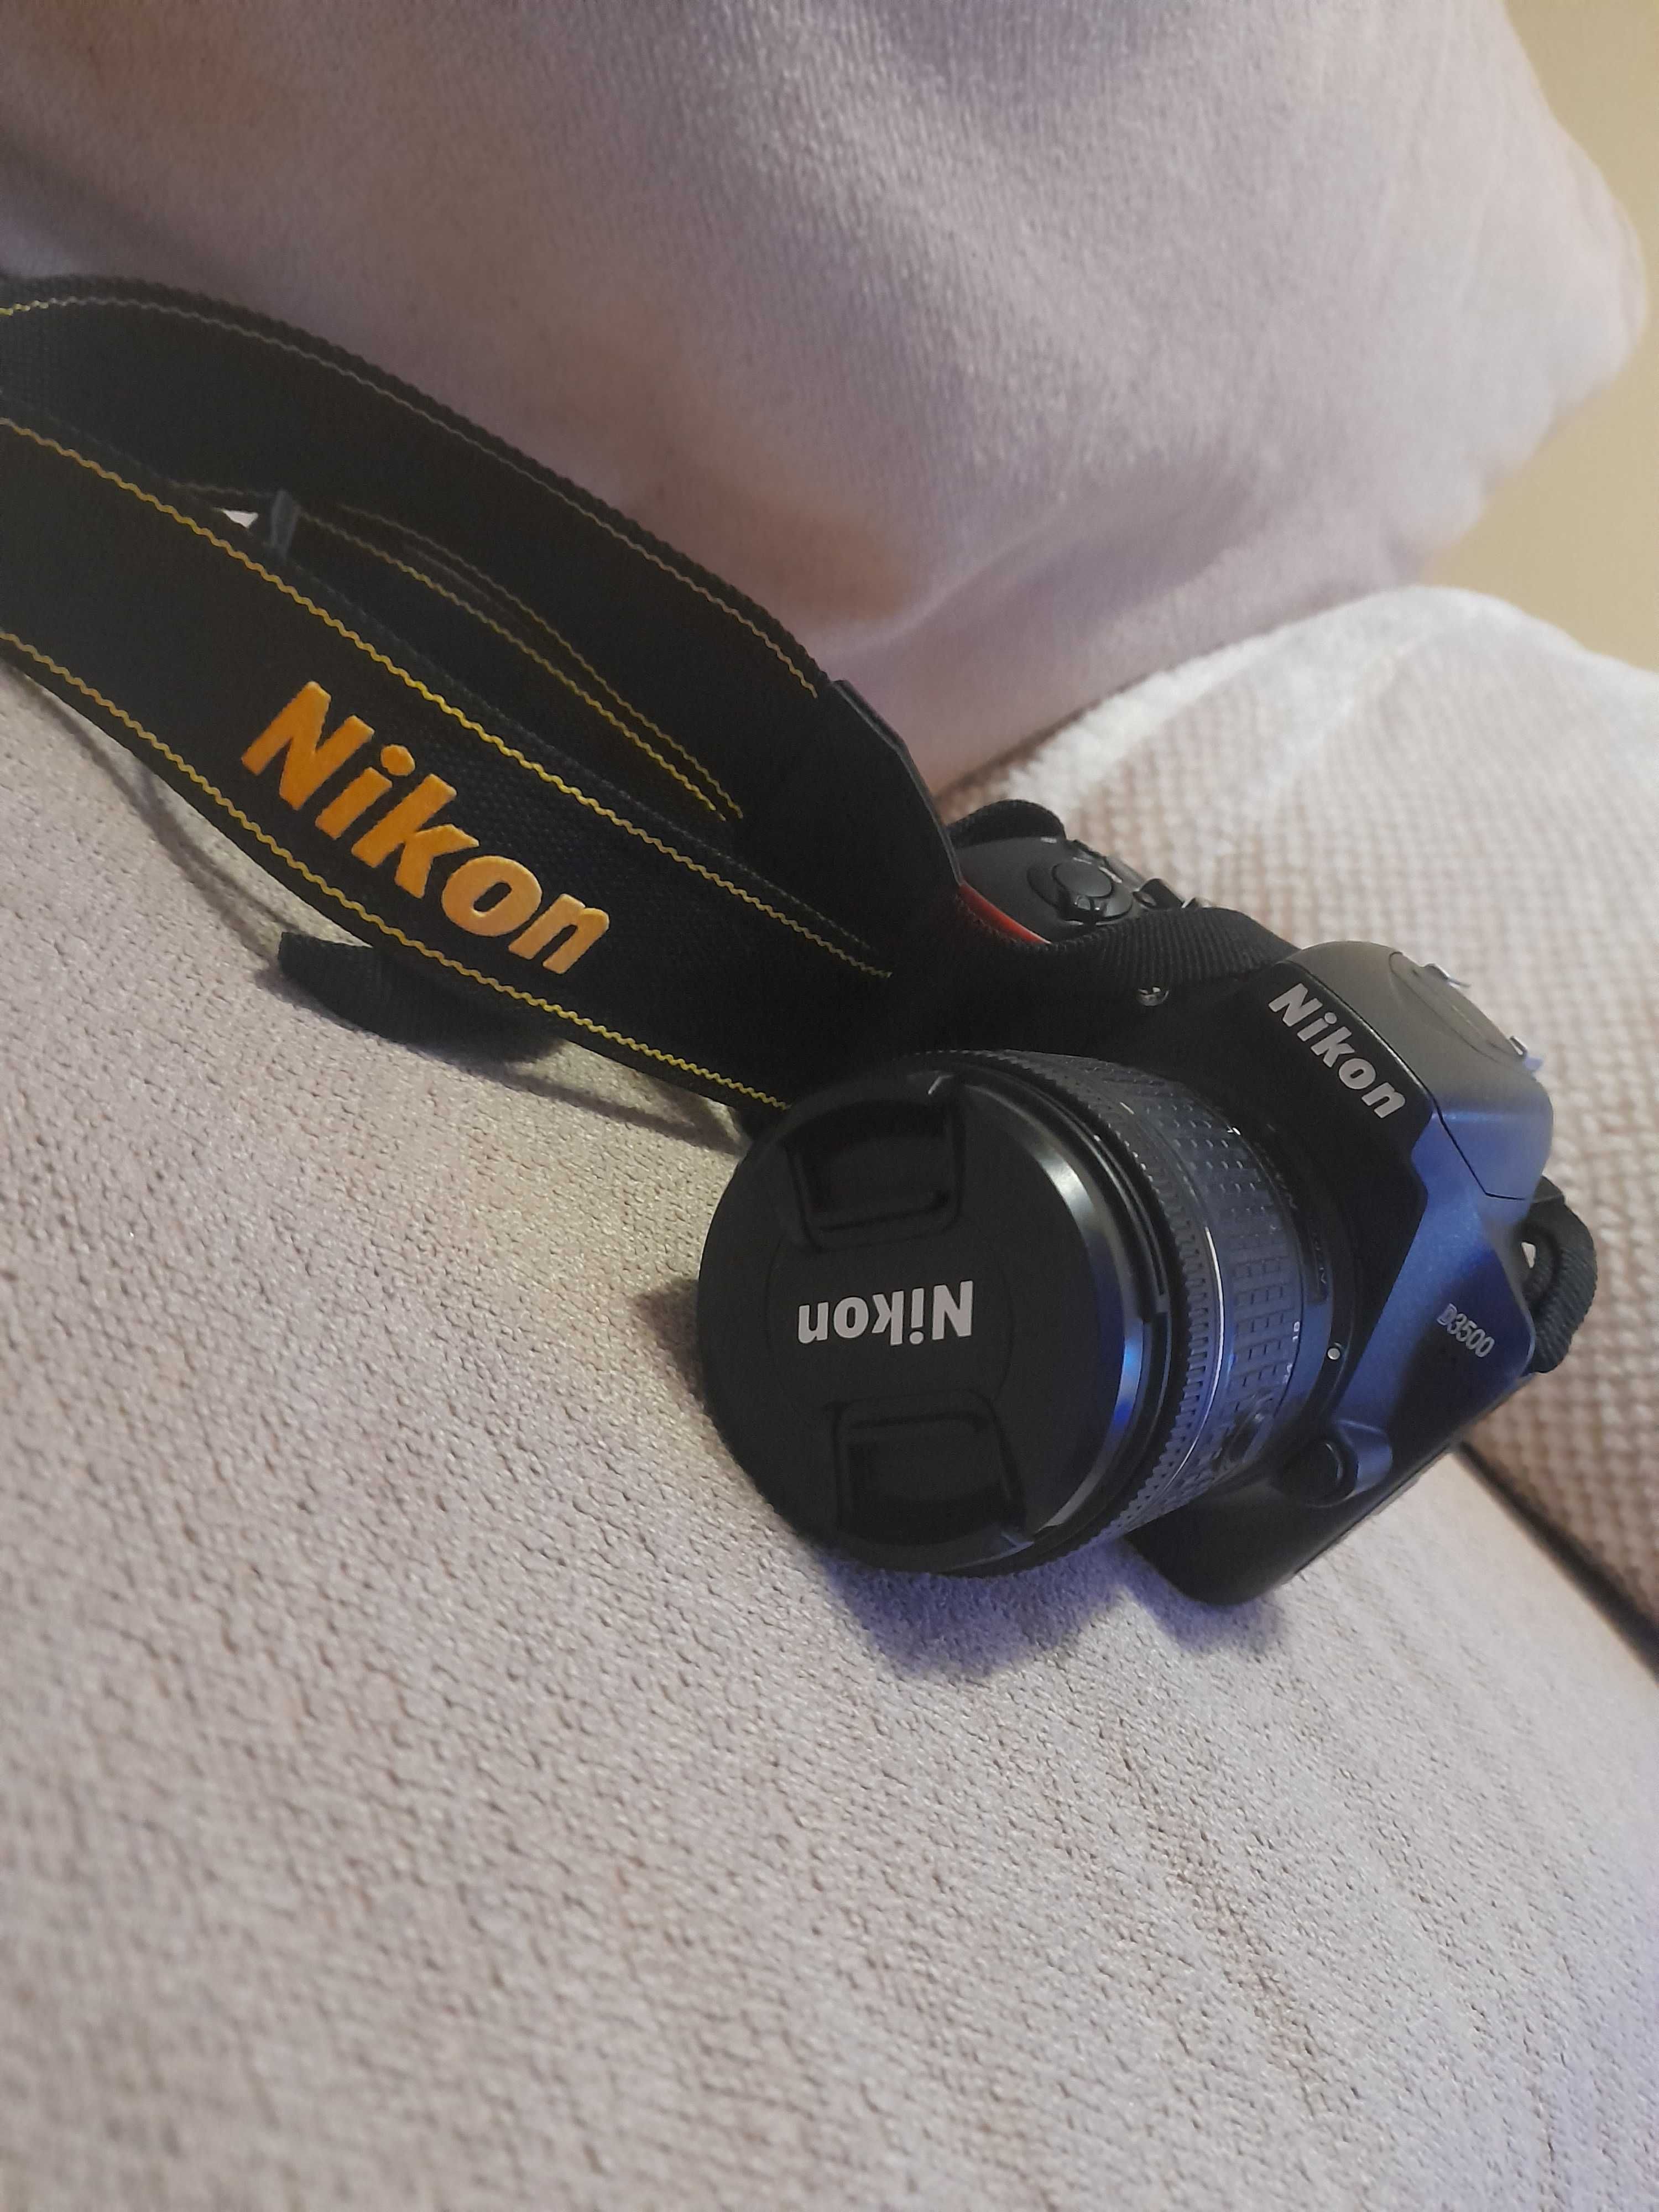 Nikon D3500, 18-55mm